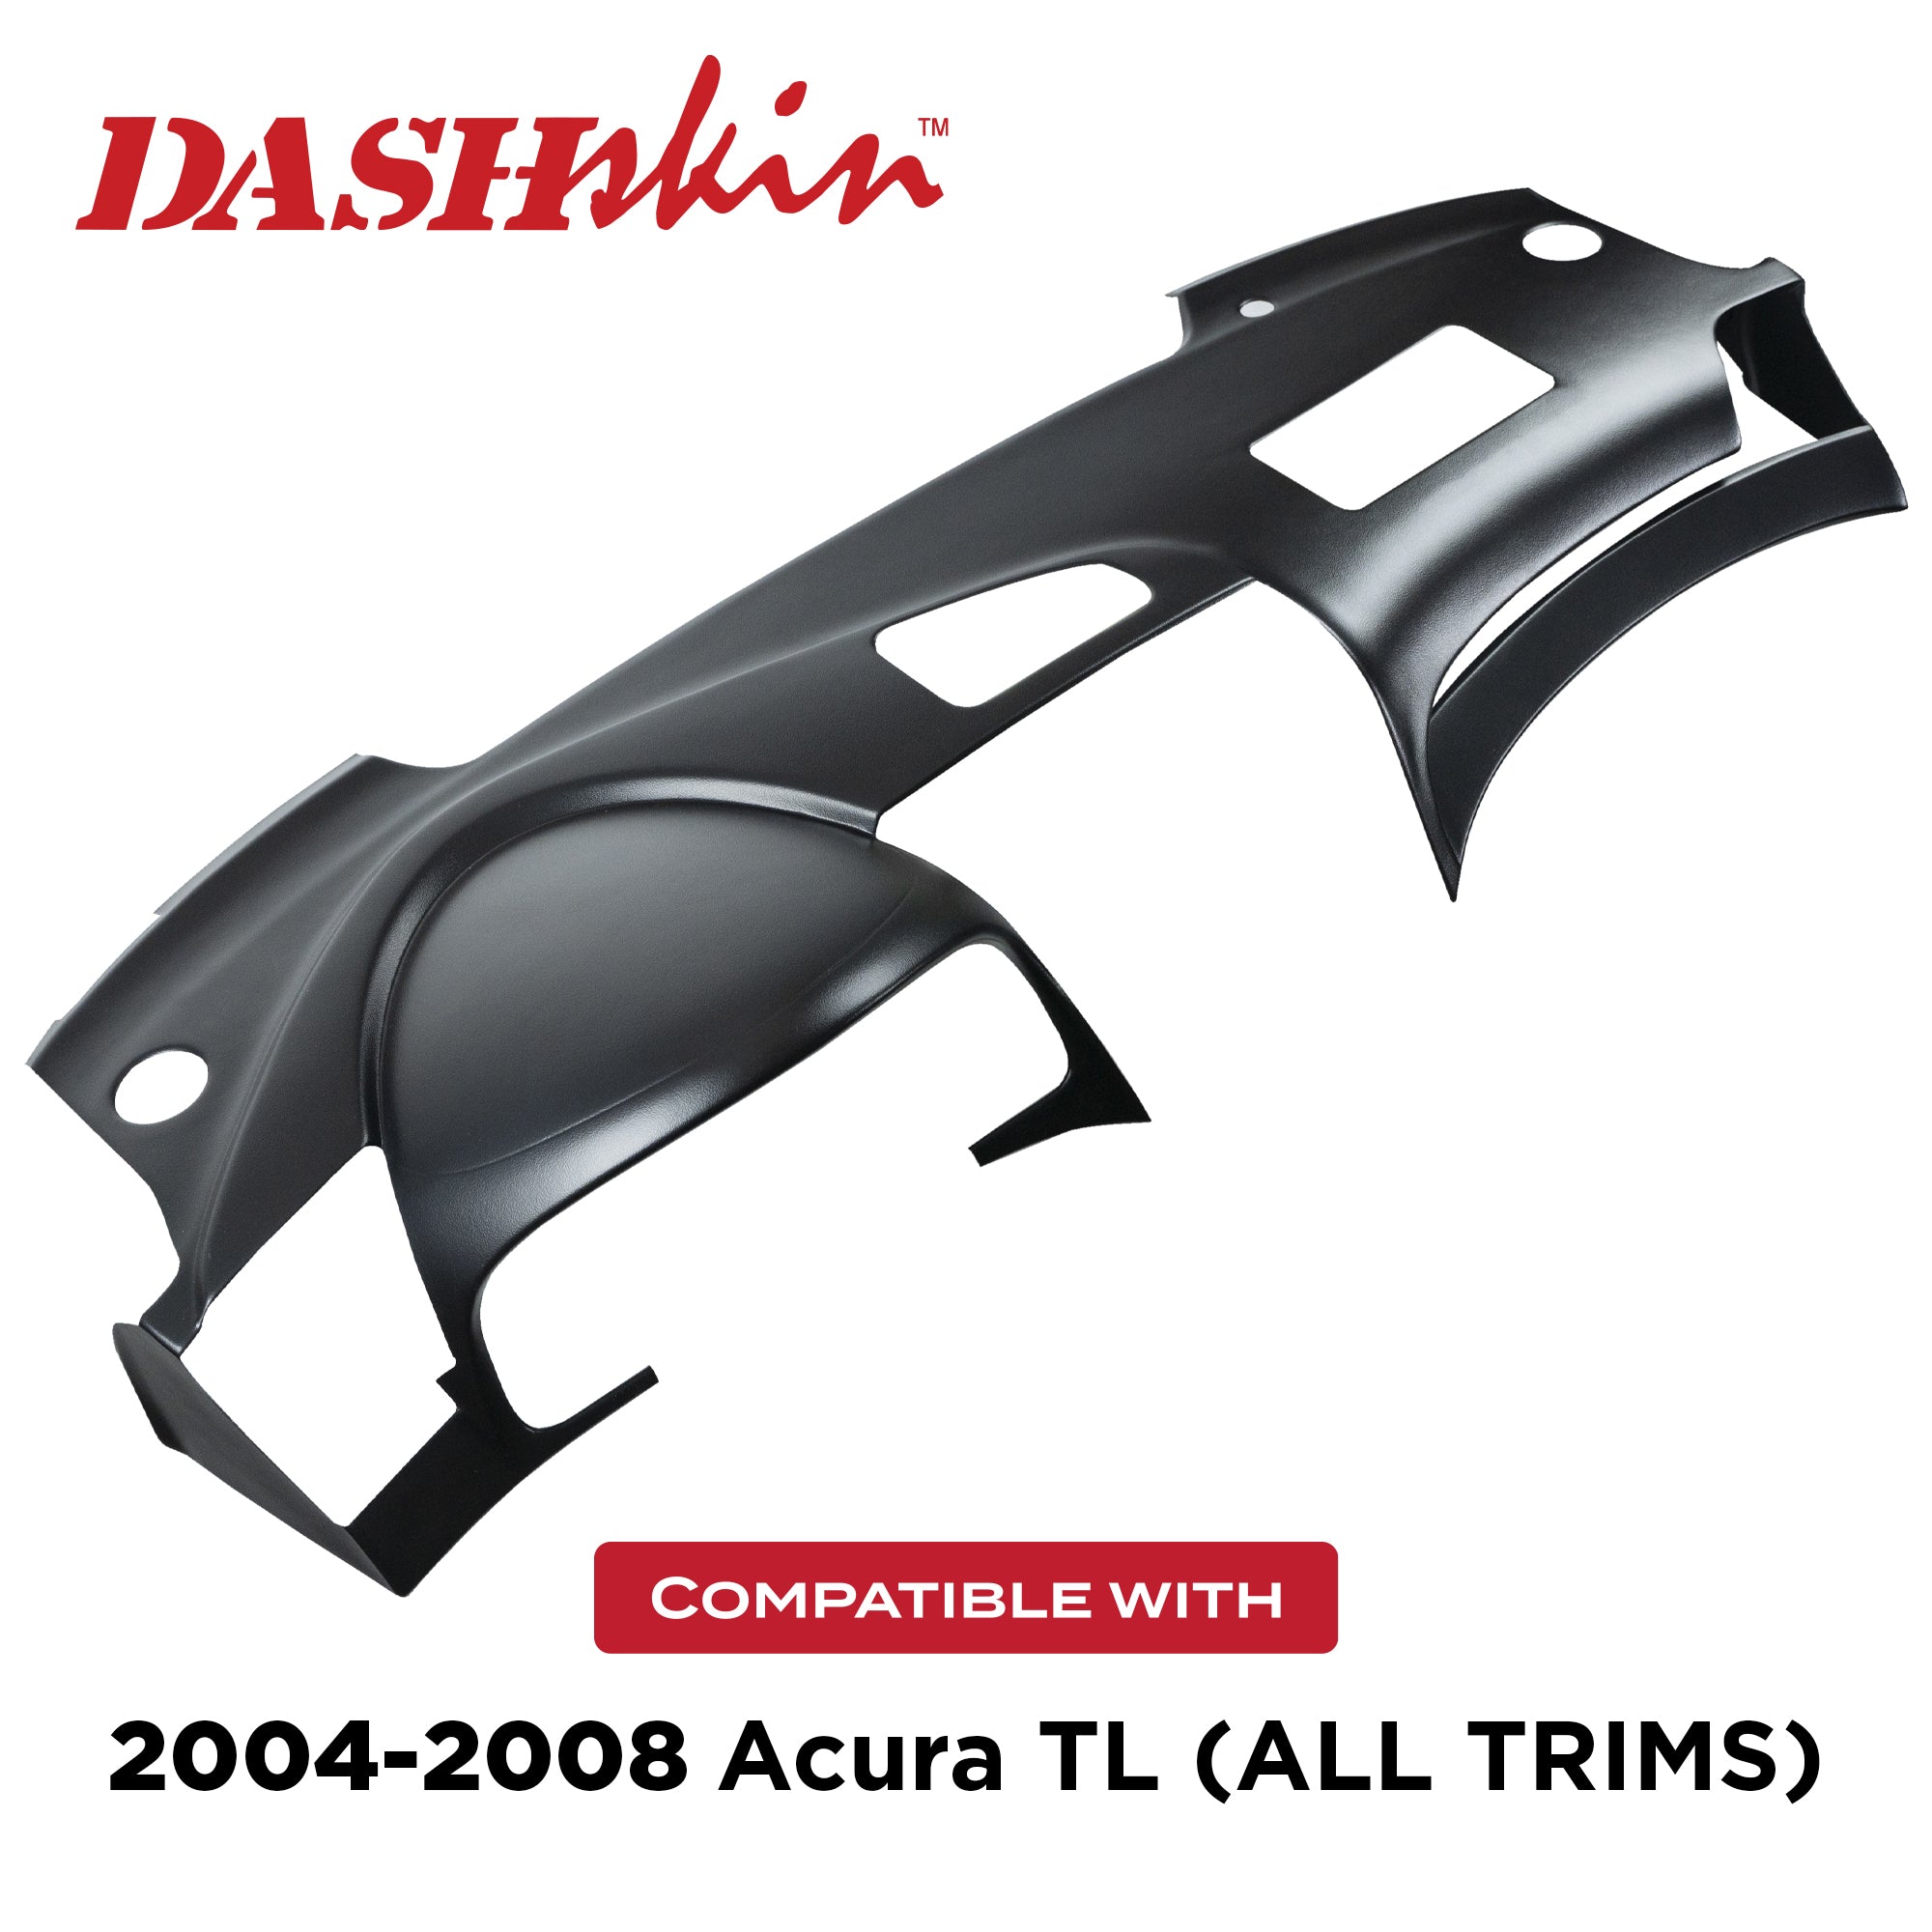 2004-2008 Acura TL Dash Cover - DashSkin